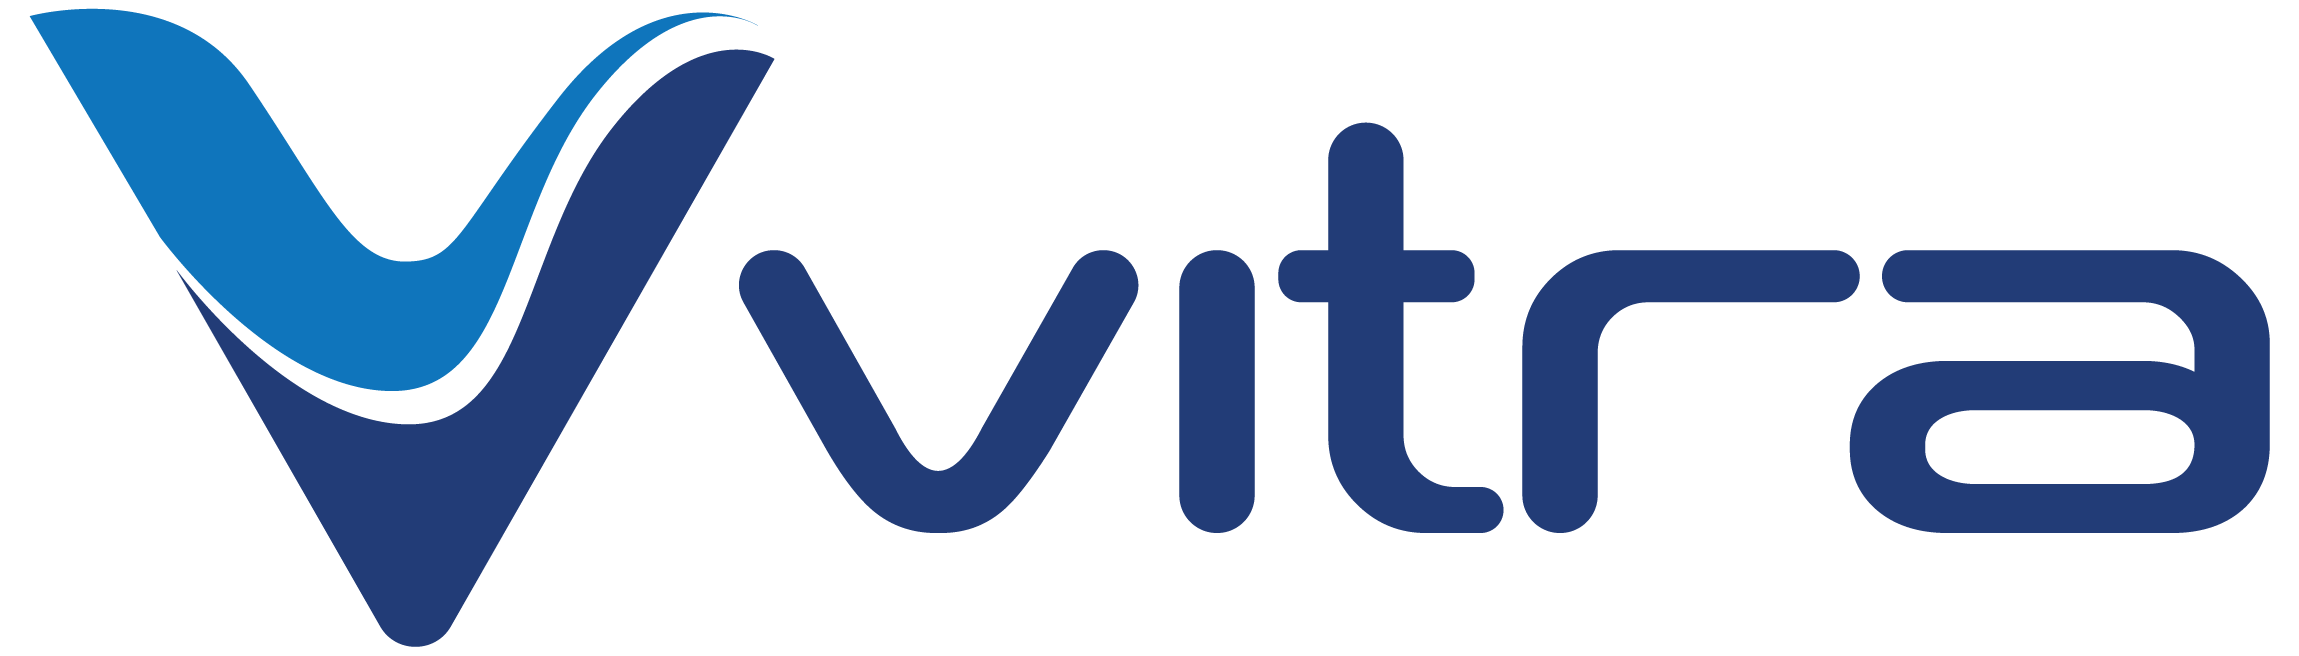 Grupo Vitra